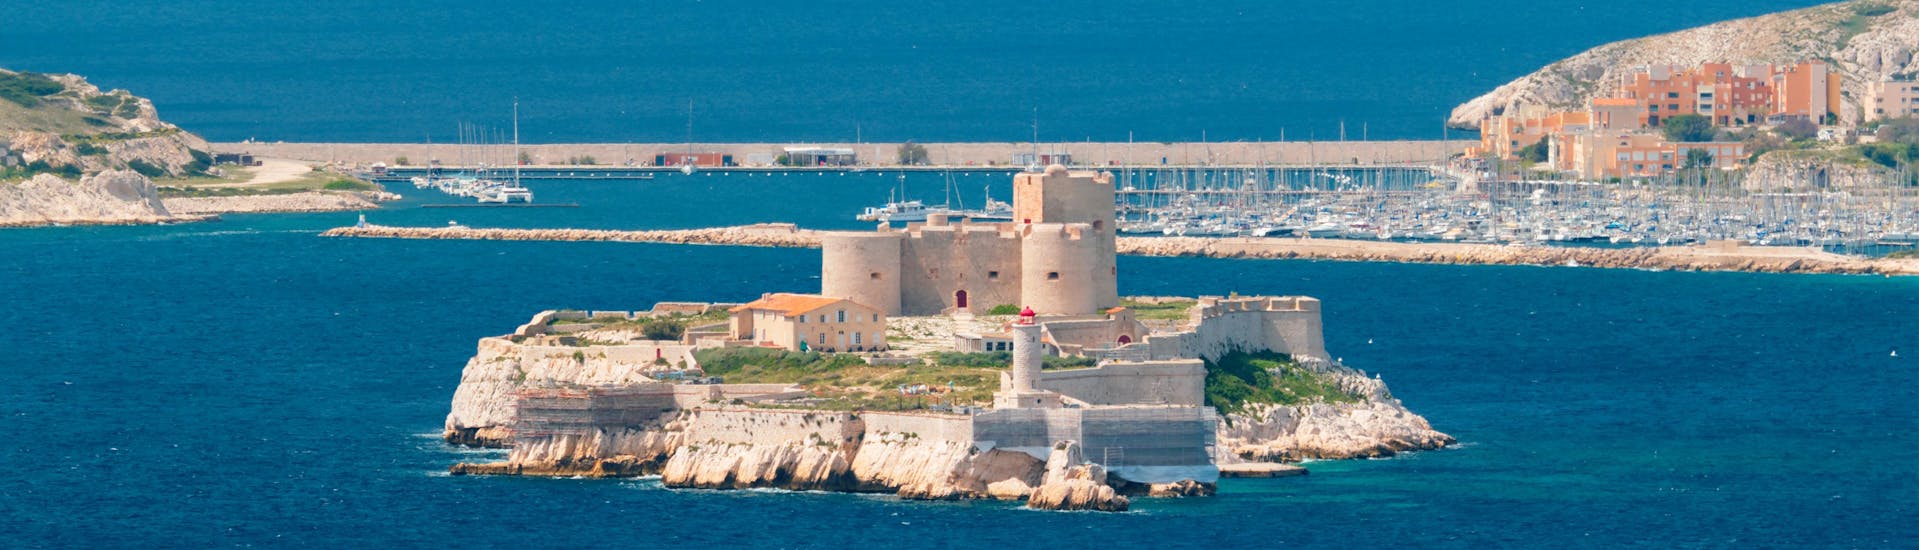 Ein Boot fährt am Château d'If vorbei, das auf zahlreichen Bootstouren ab Marseille besichtigt werden kann.